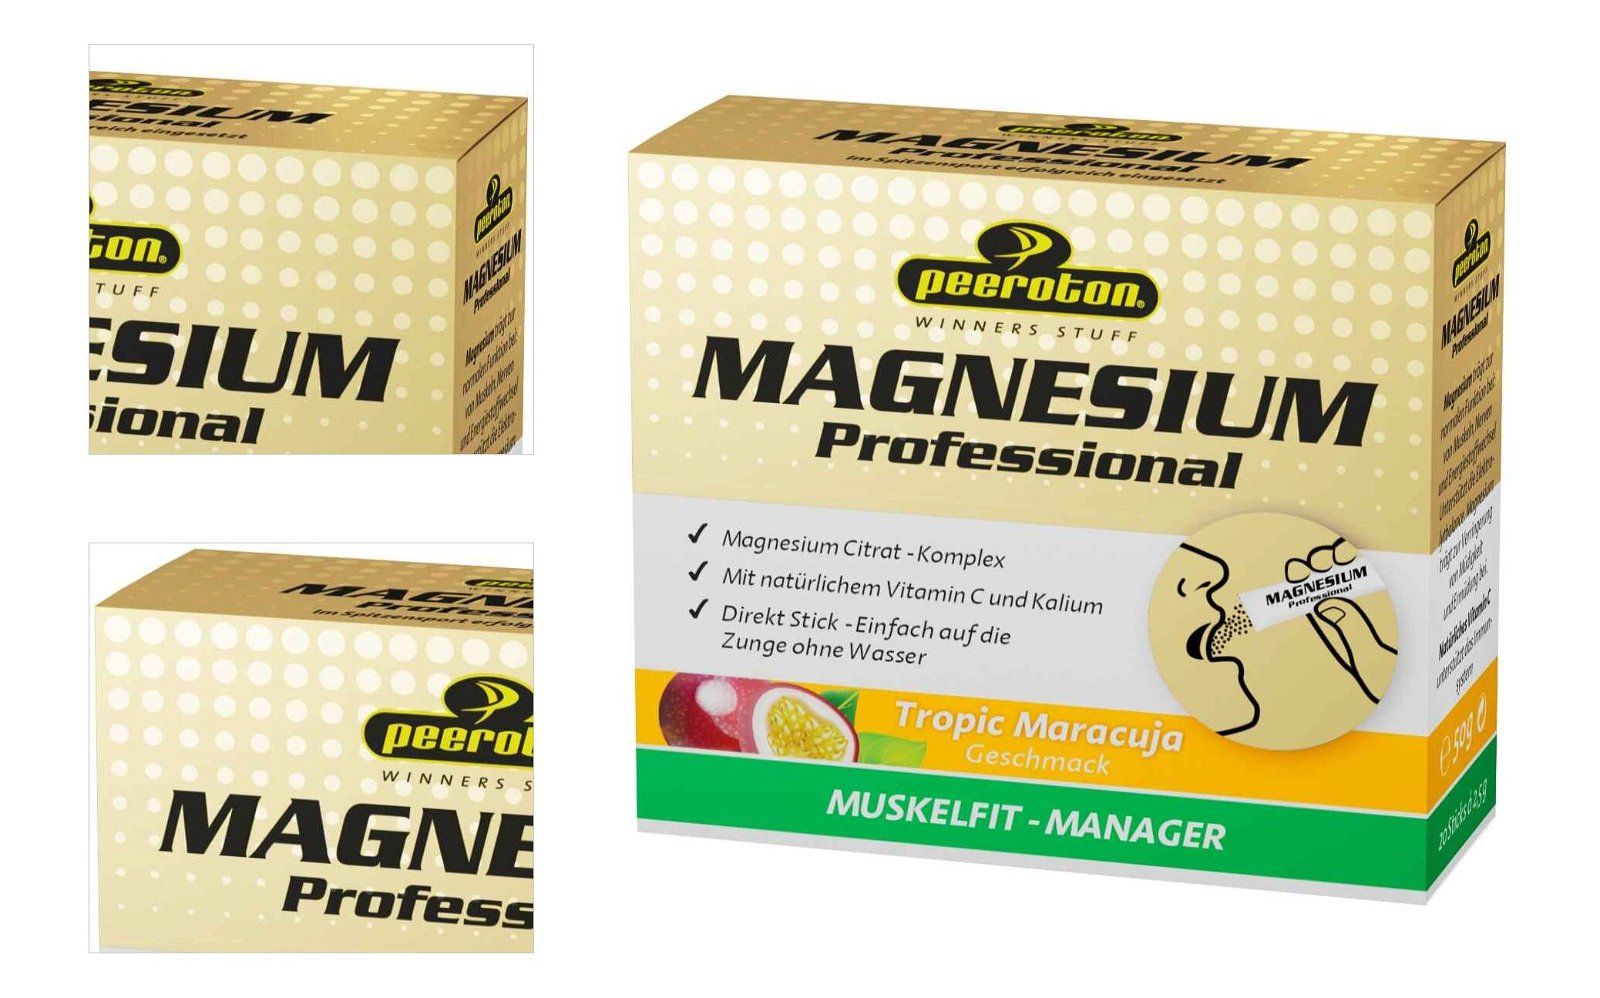 Peeroton MAGNESIUM Professional 20x2.5g tropic 9